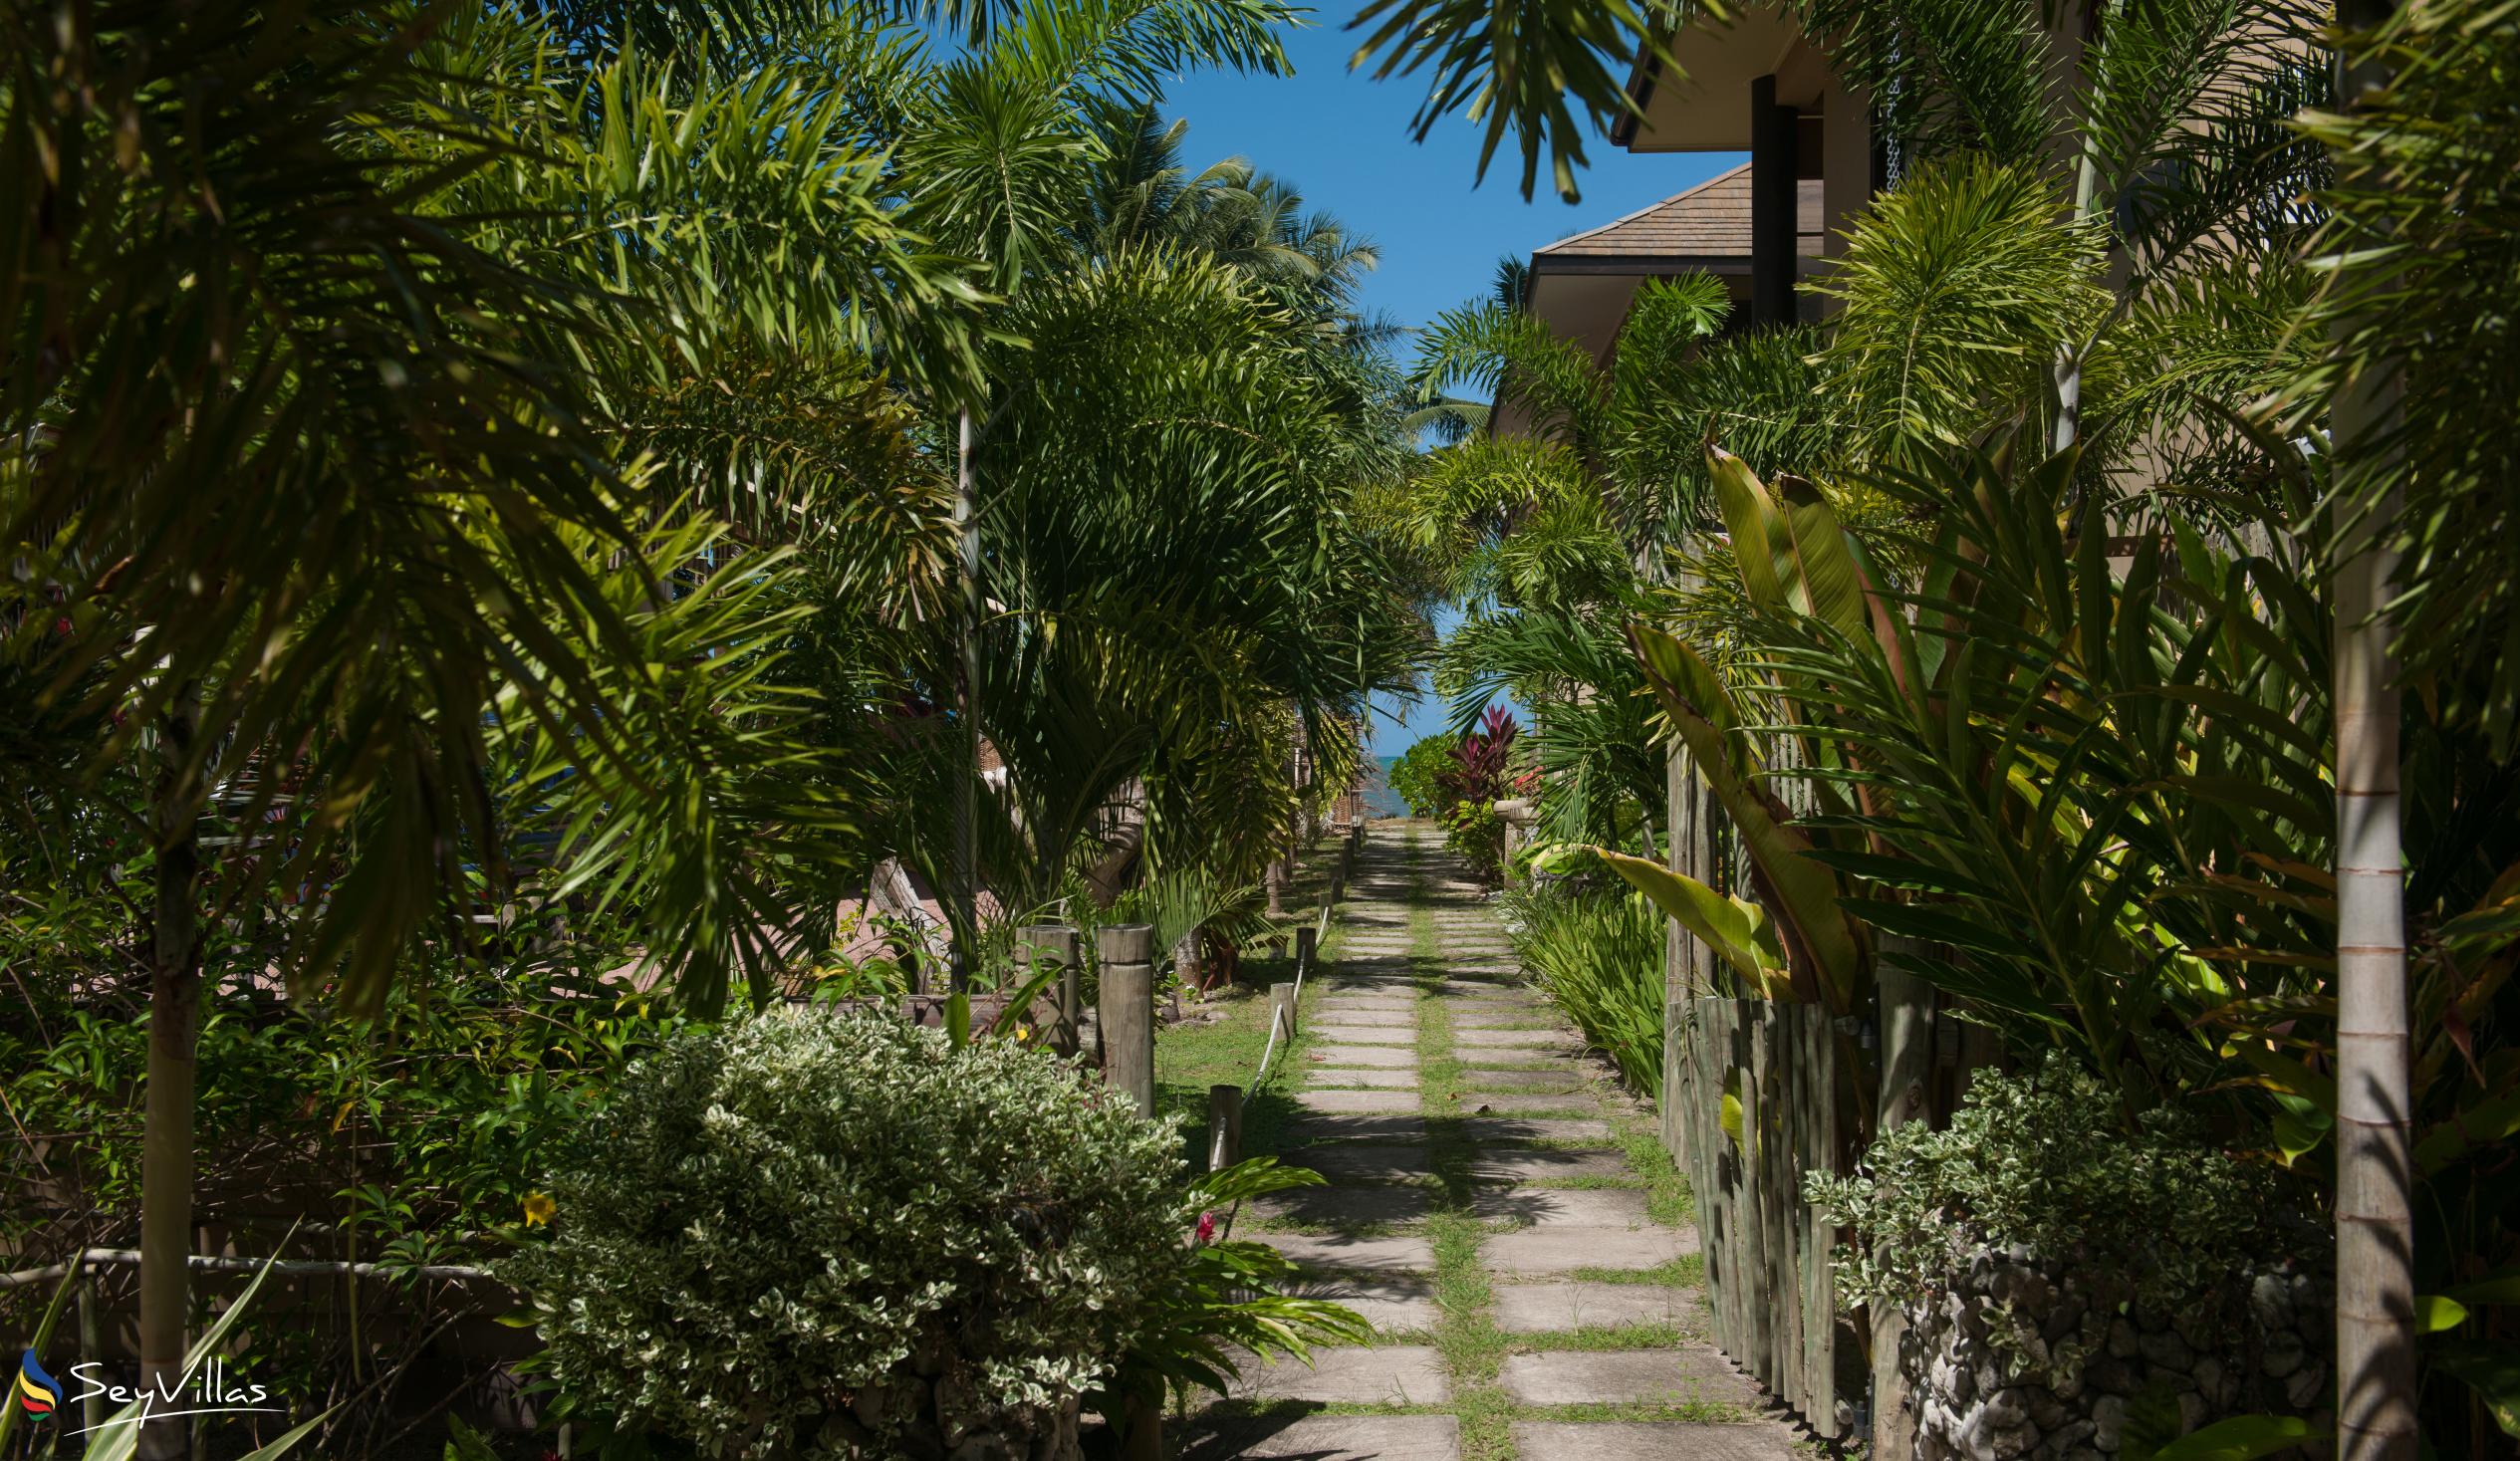 Foto 14: Villas des Alizes - Aussenbereich - Praslin (Seychellen)